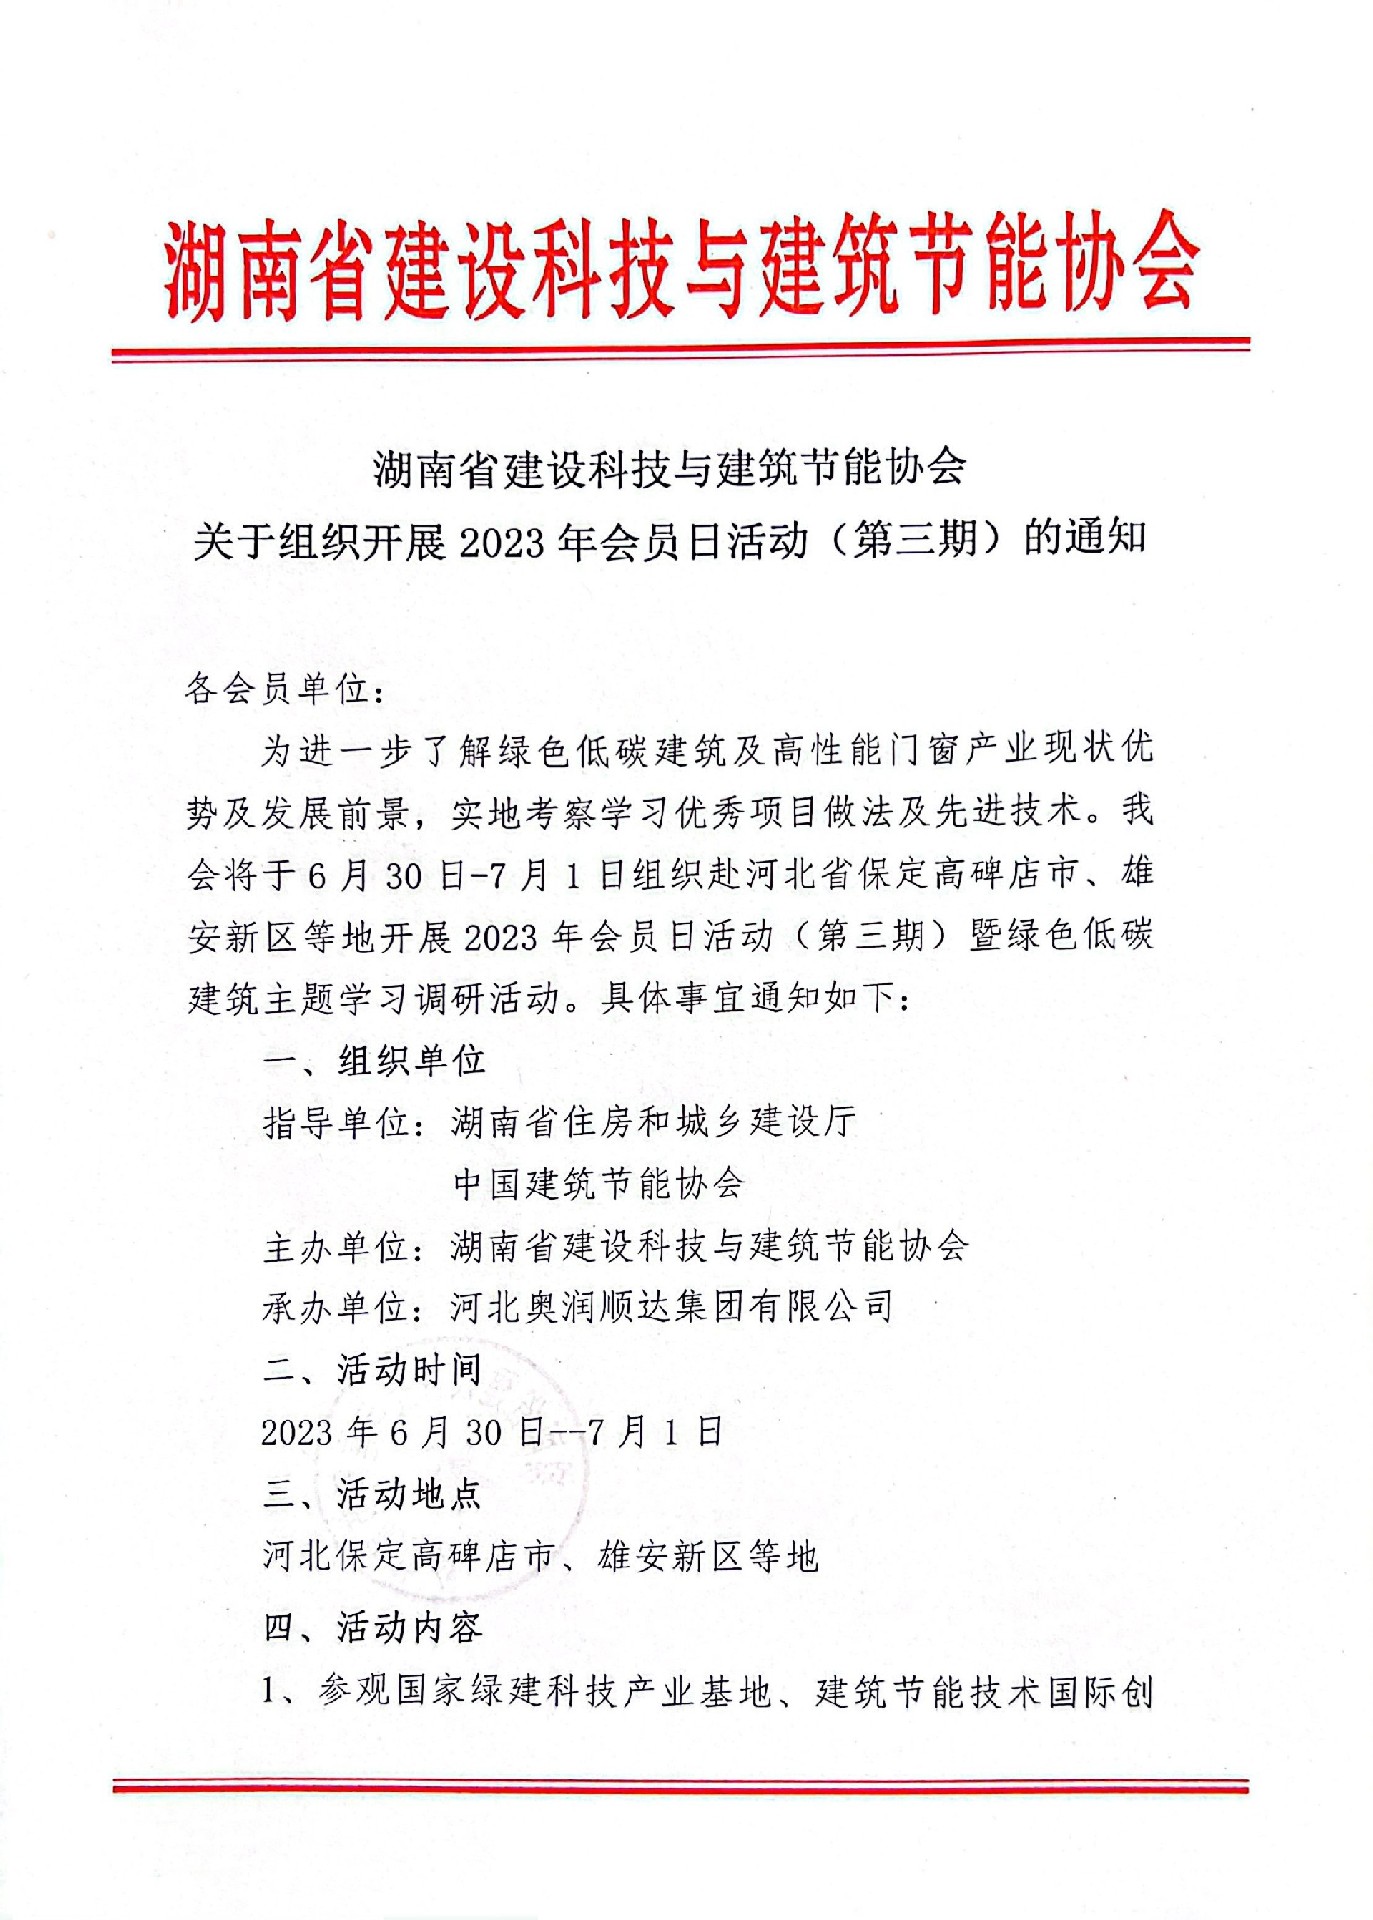 湖南省建設科技與建筑節能協會關于組織開展2023年會員日活動（第三期）的通知